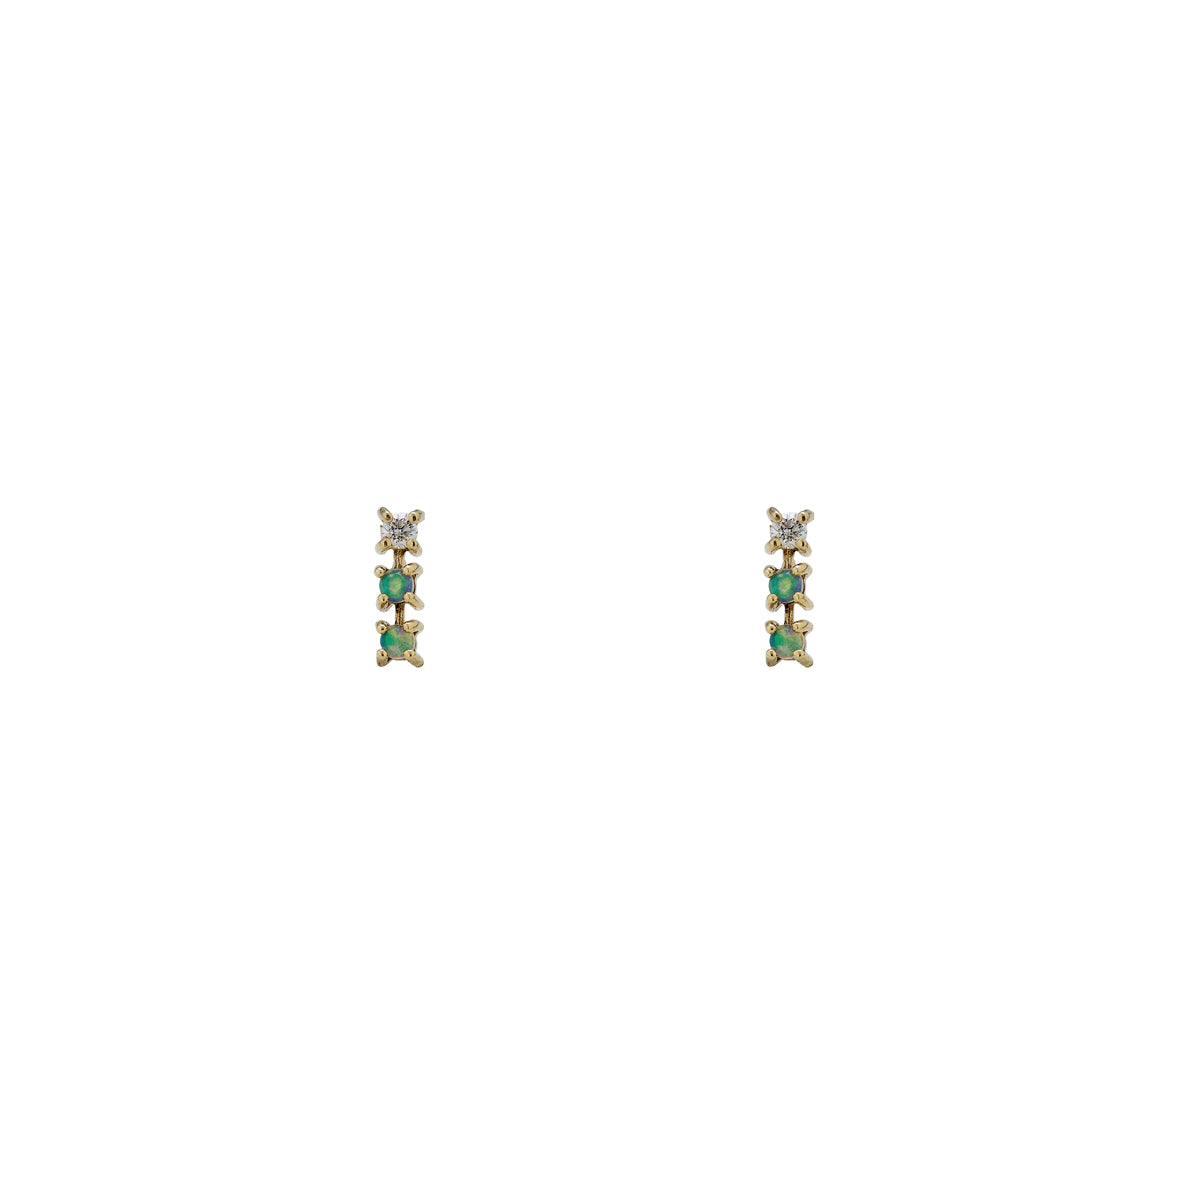 opal diamond triple line earrings_2a841351 6be6 472f b77f 120aee3fda73